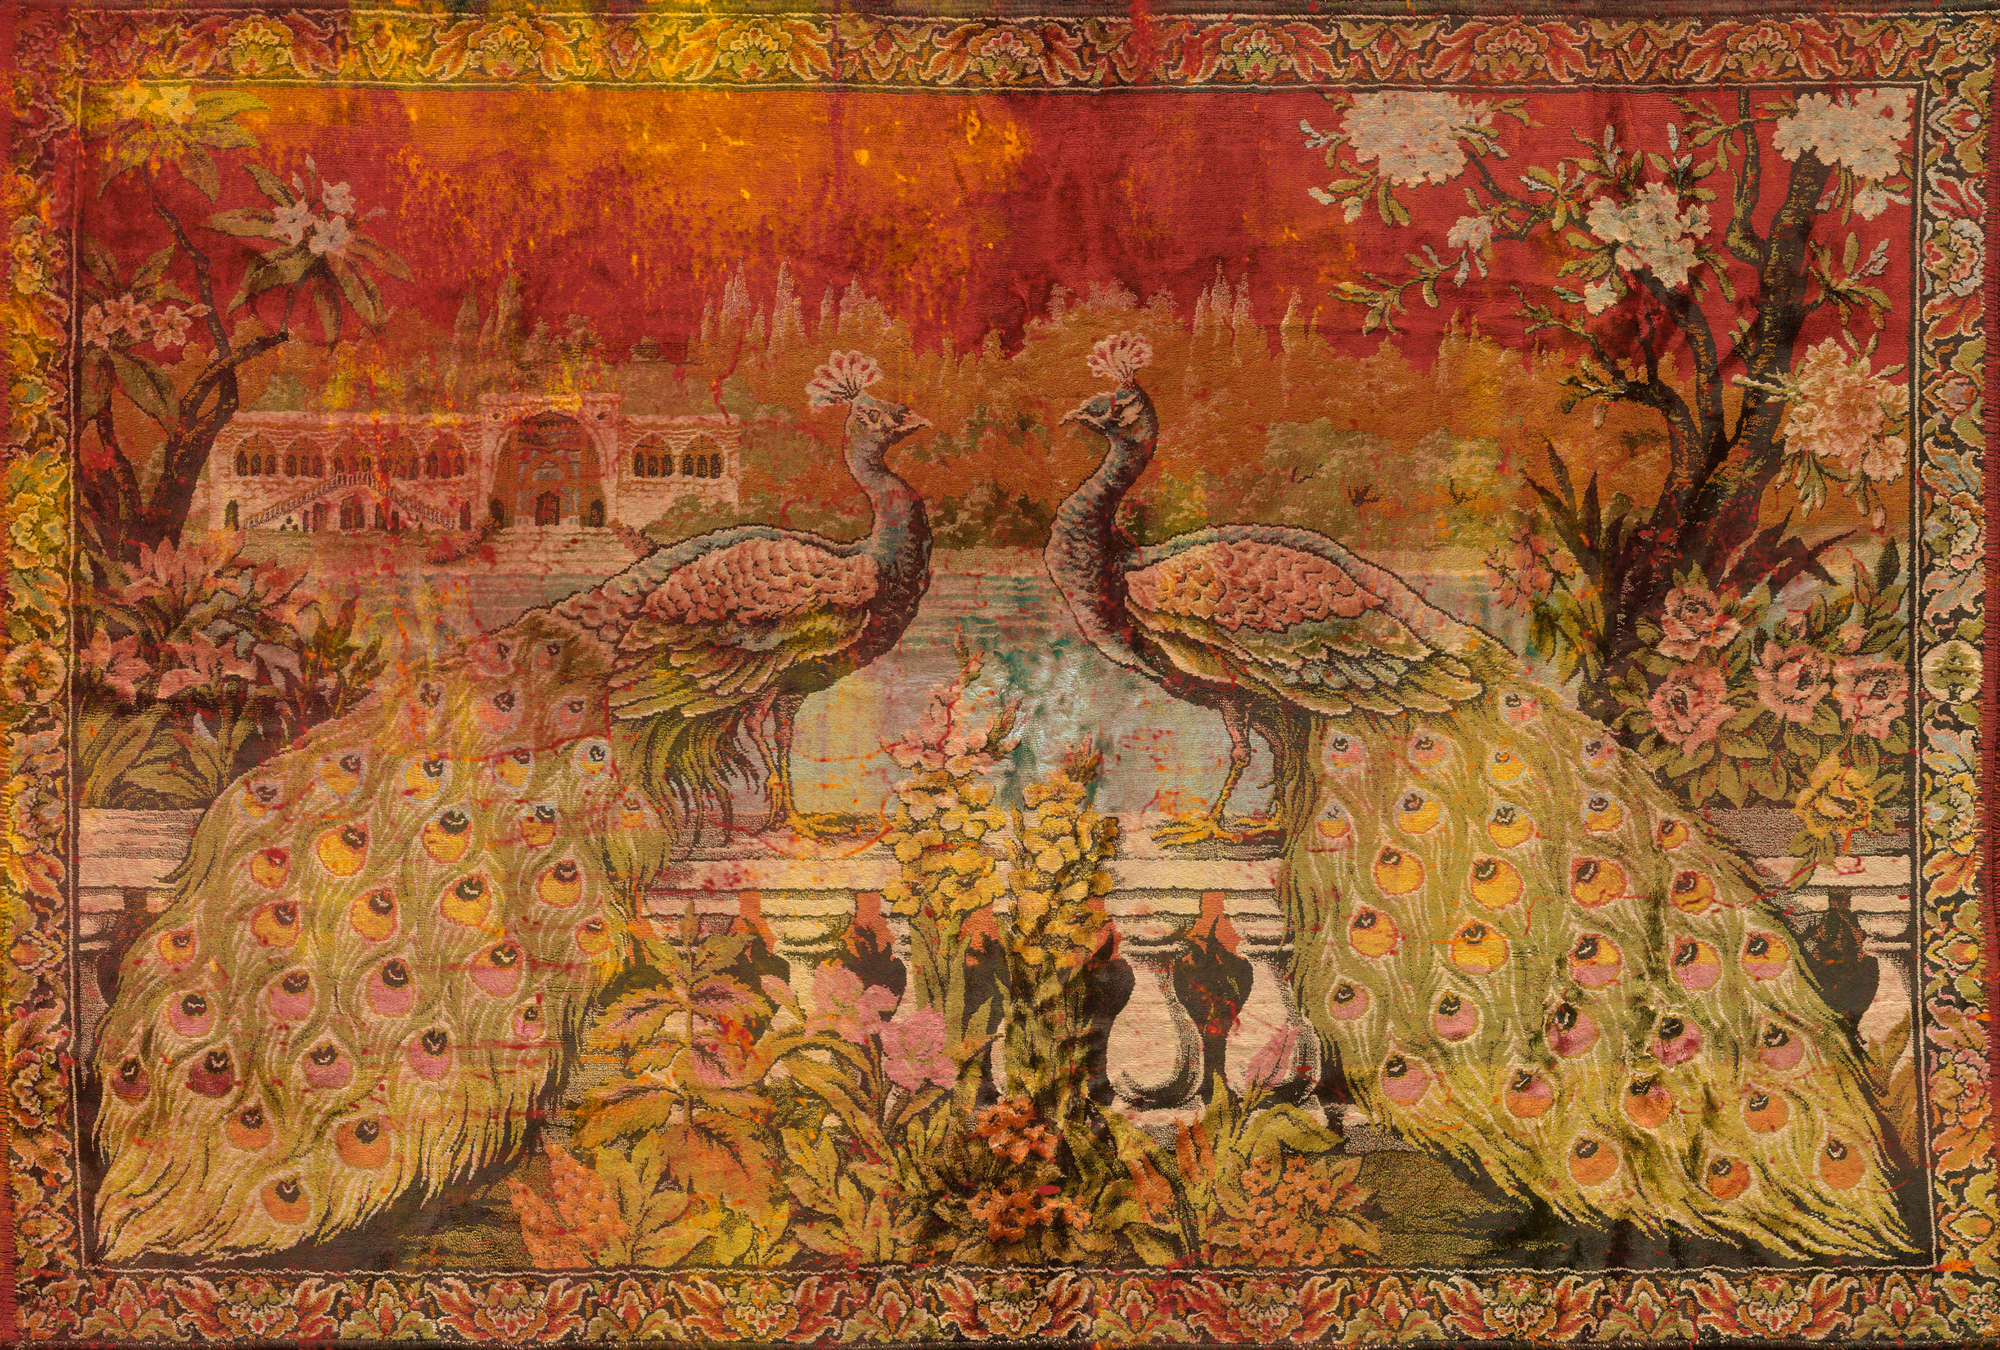             Papier peint coloré de style ethnique avec peinture indienne - vert, rouge, orange
        